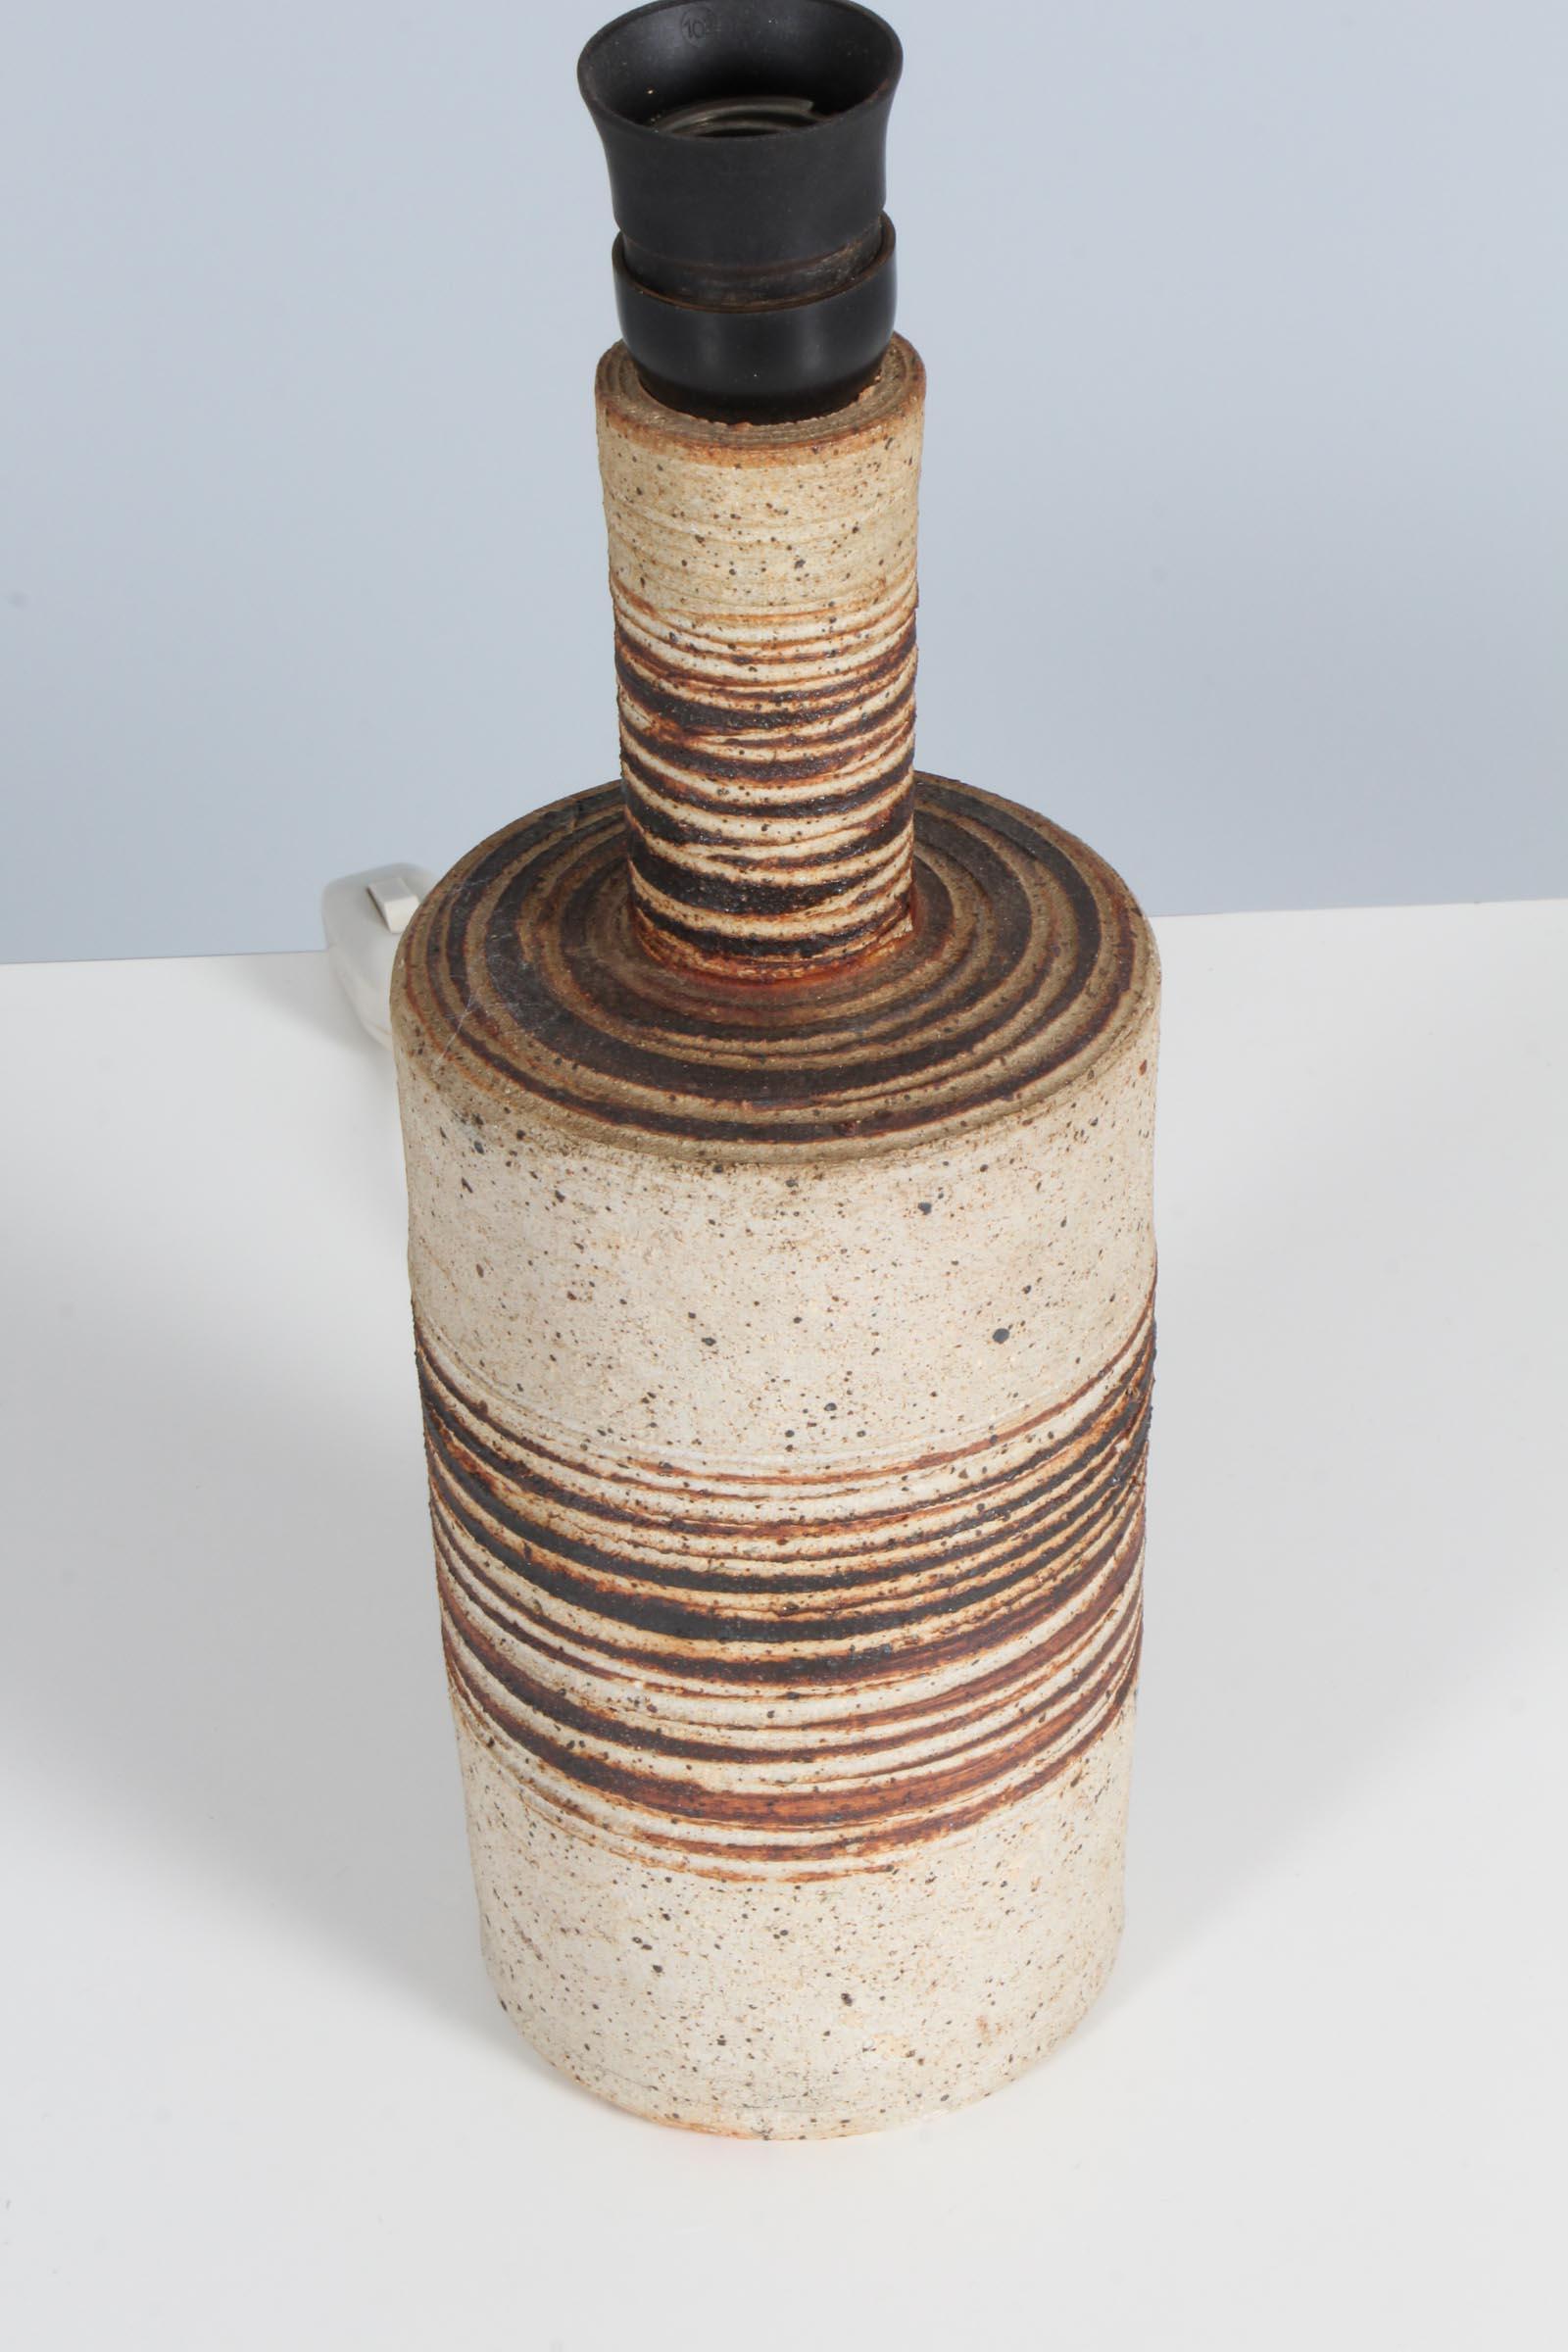 1960er Jahre Tischlampe aus Steingut, radgedreht, vom dänischen Keramiker Tue Poulsen. Klar glasierter, gesprenkelter, neutraler Steingut-Tonkörper mit eingeschnittenem, horizontalem Muster über Eisenoxid-Farbstoff. Unterseite gestempelt 